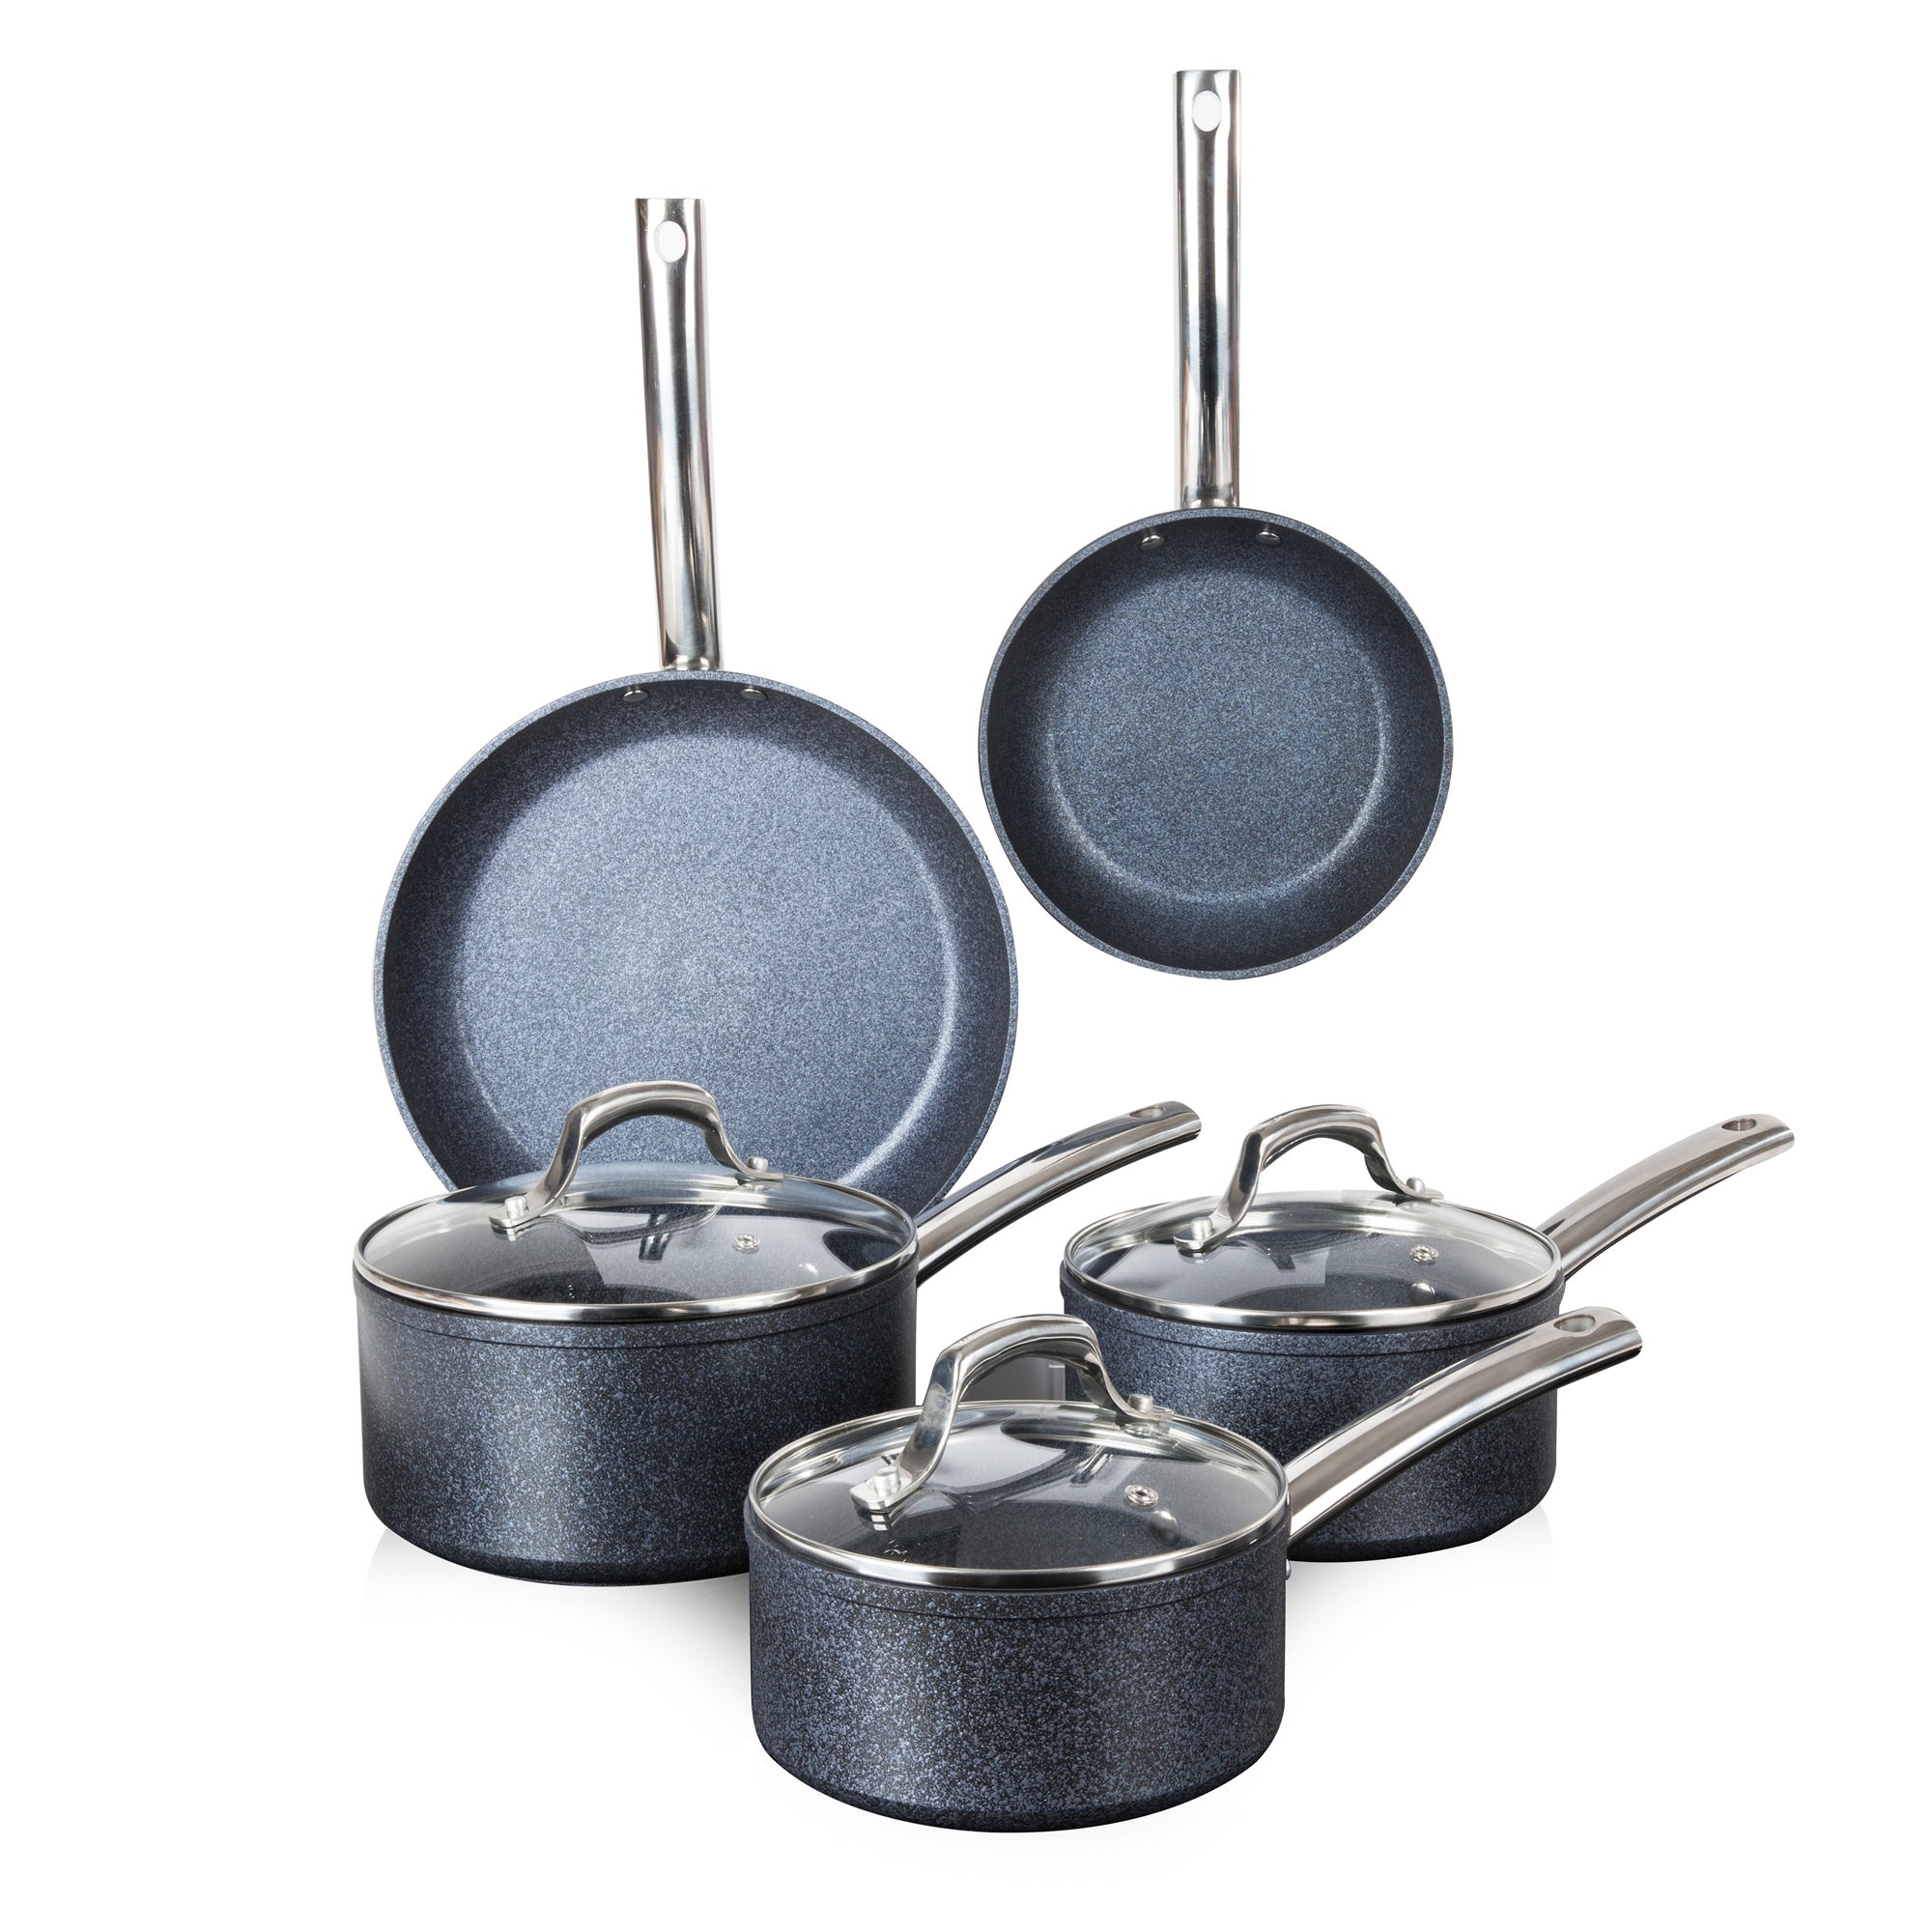 TruStone Non-Stick Aluminium Violet Black 5 Piece Pan Set